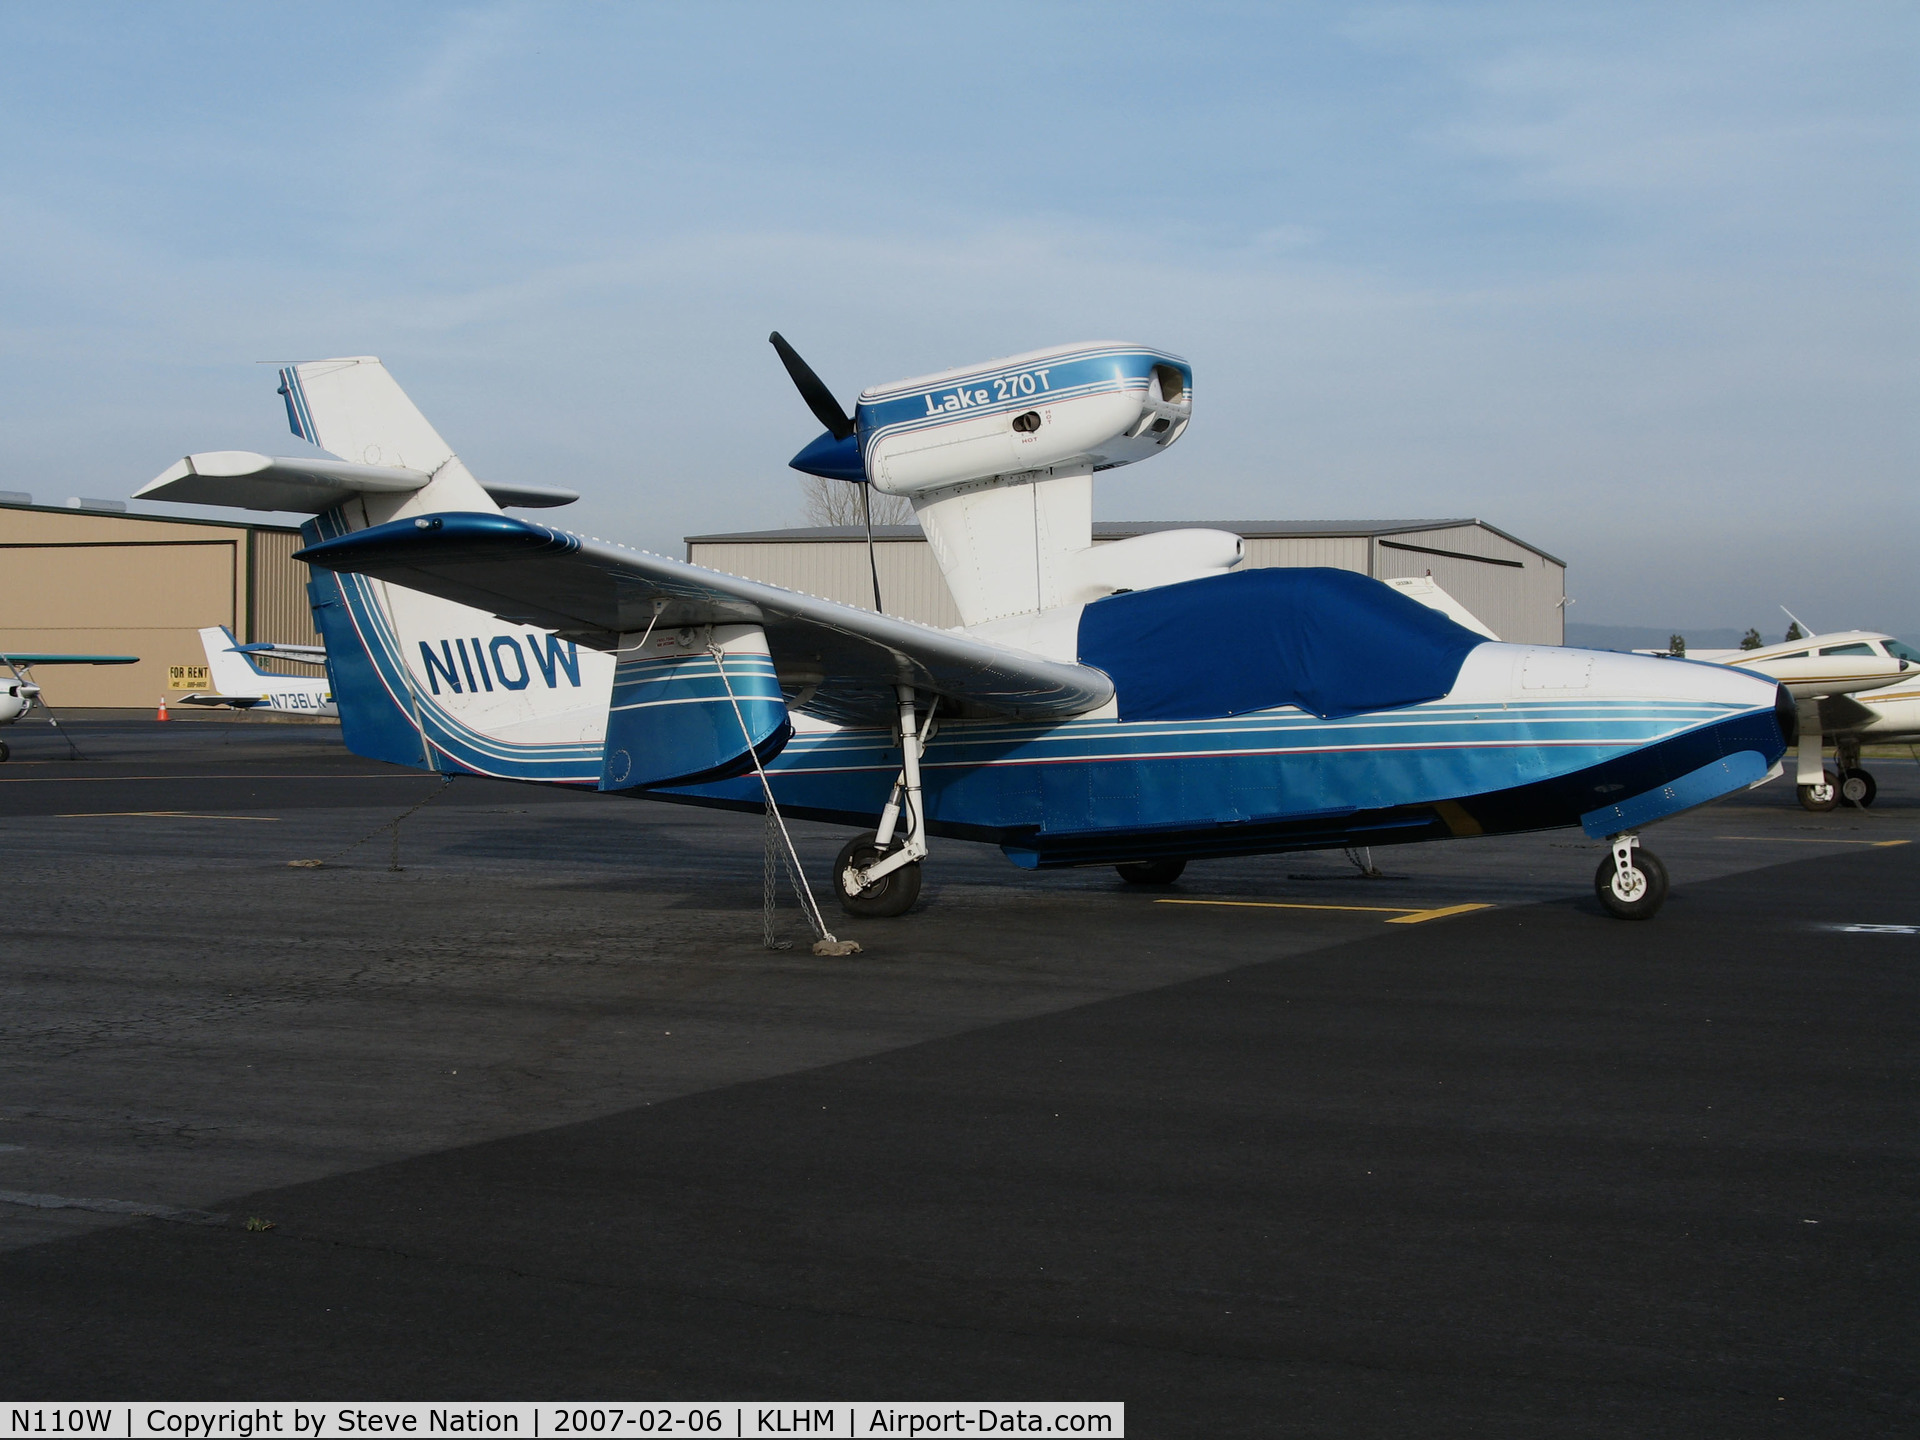 N110W, Aerofab Inc Lake 250 C/N 131, Seabird Inc., Hamilton, MT-based Aerofab Lake 250 